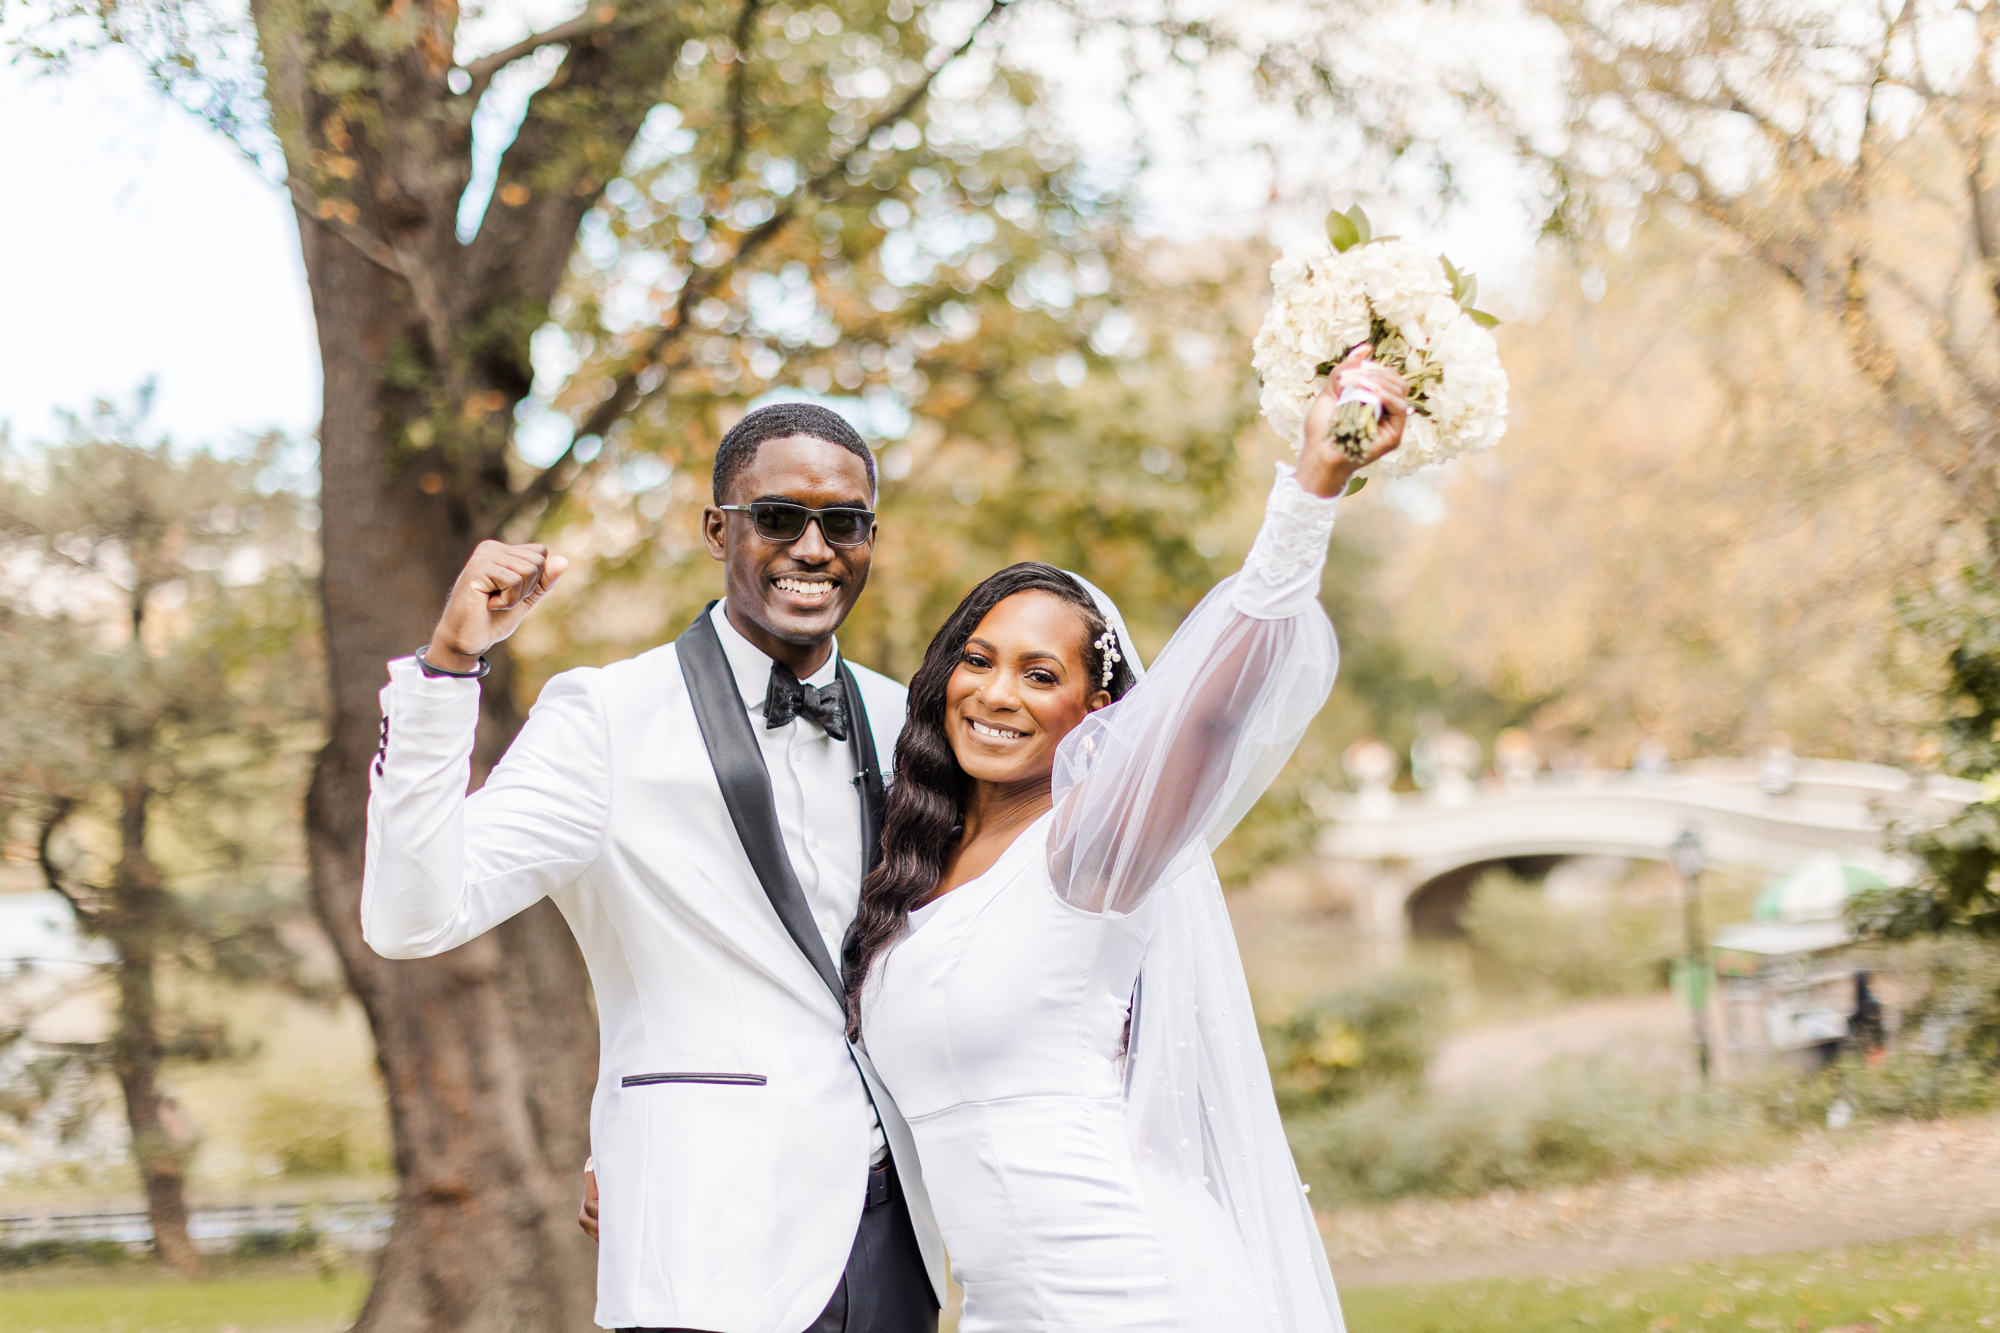 Joyful Central Park Wedding Photos on Cherry Hill in Fall